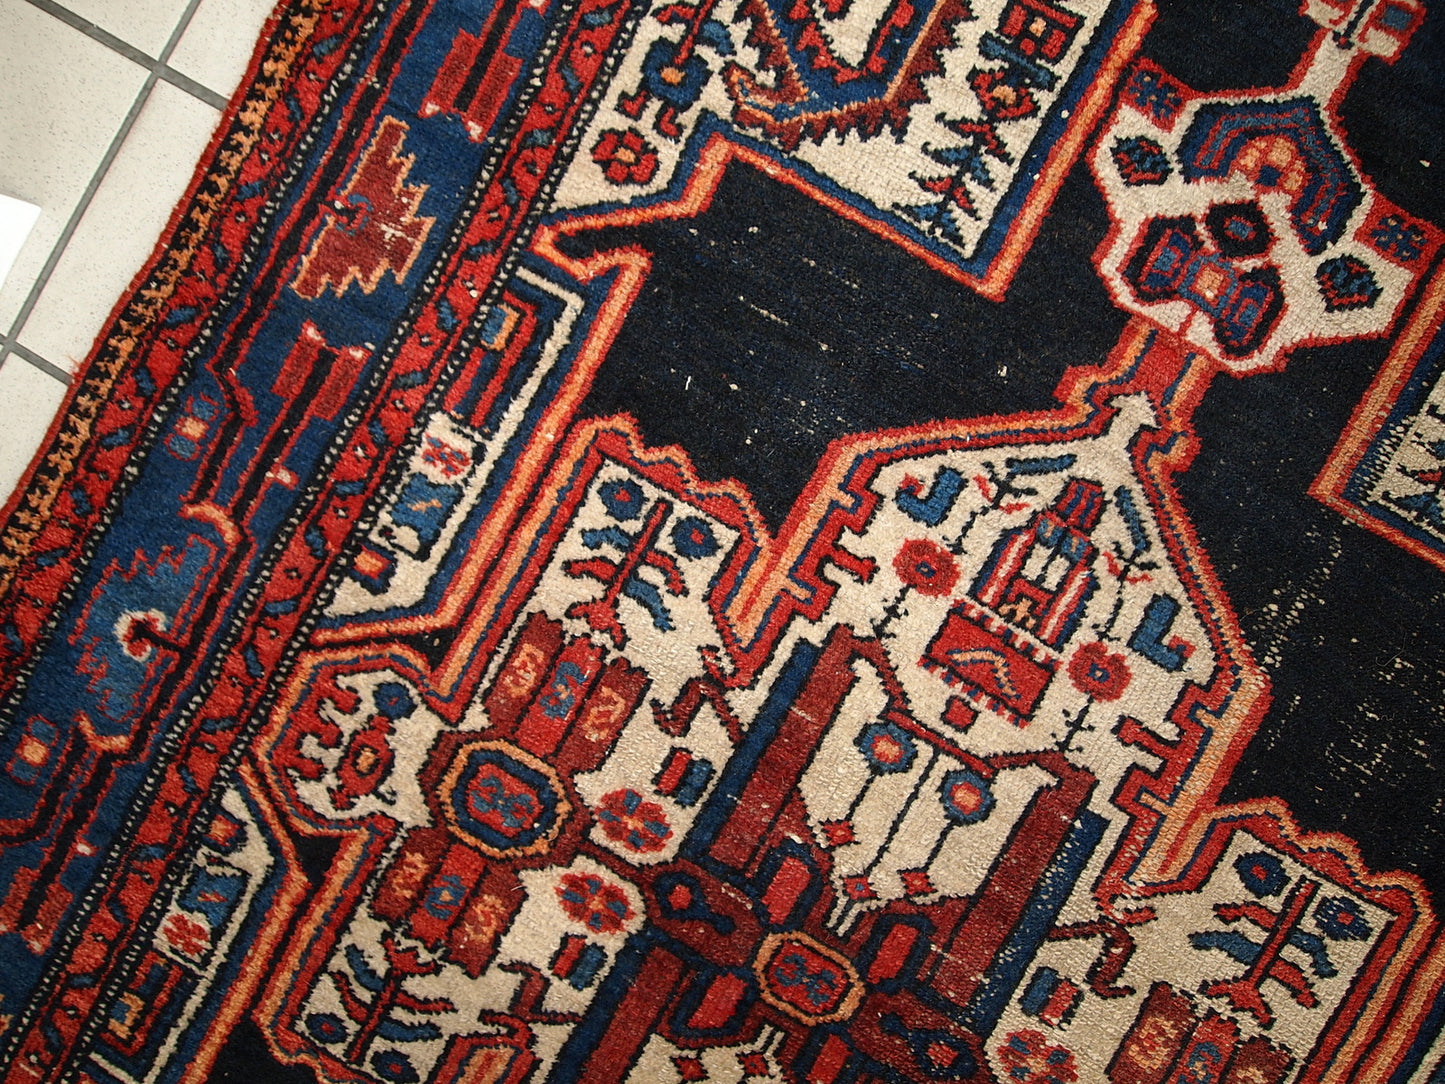 Handmade antique Persian Hamadan rug 3.9' x 5.9' (120cm x 180cm) 1920s - 1C321